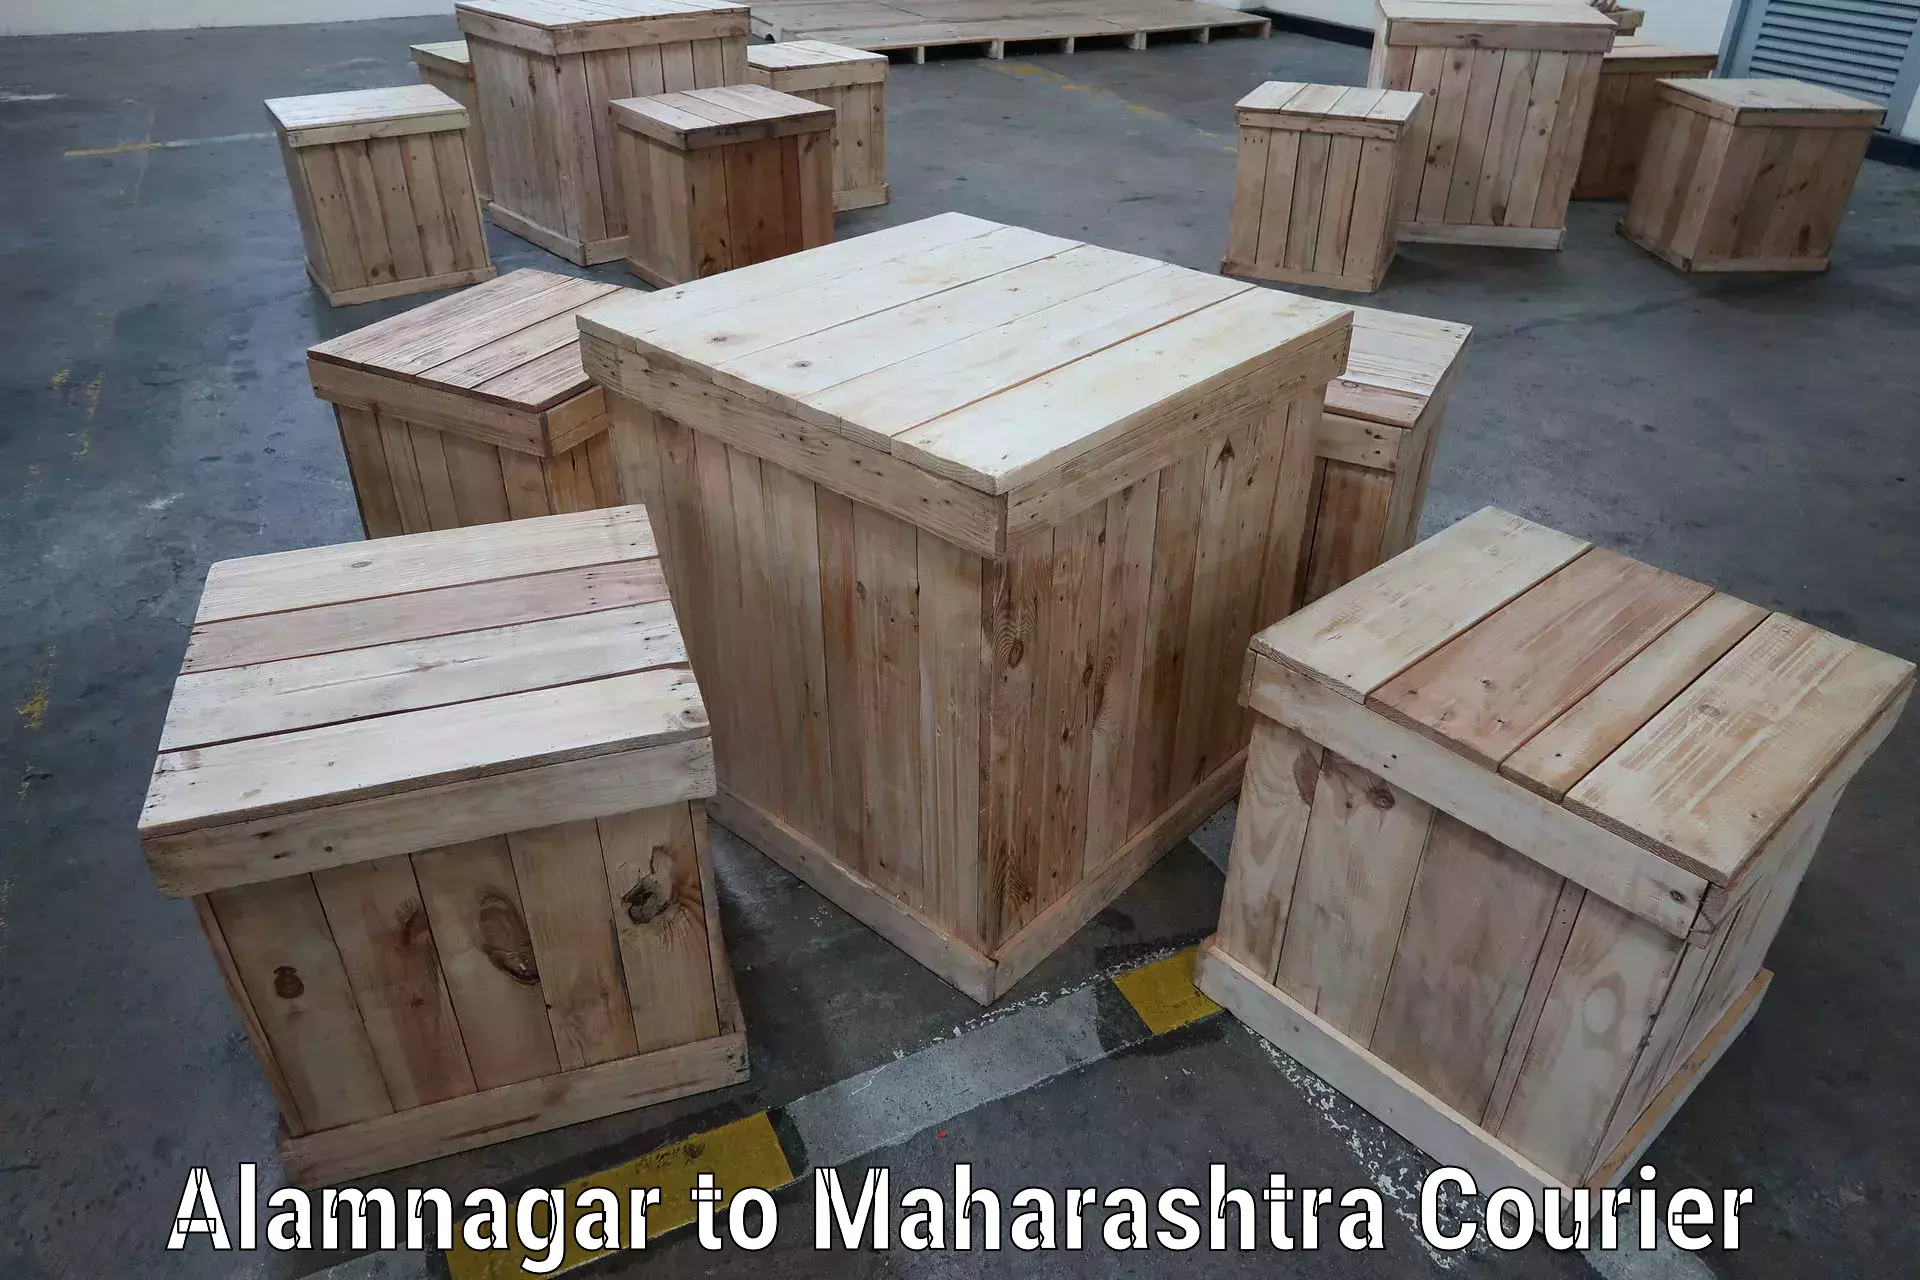 Quality courier services Alamnagar to Maharashtra